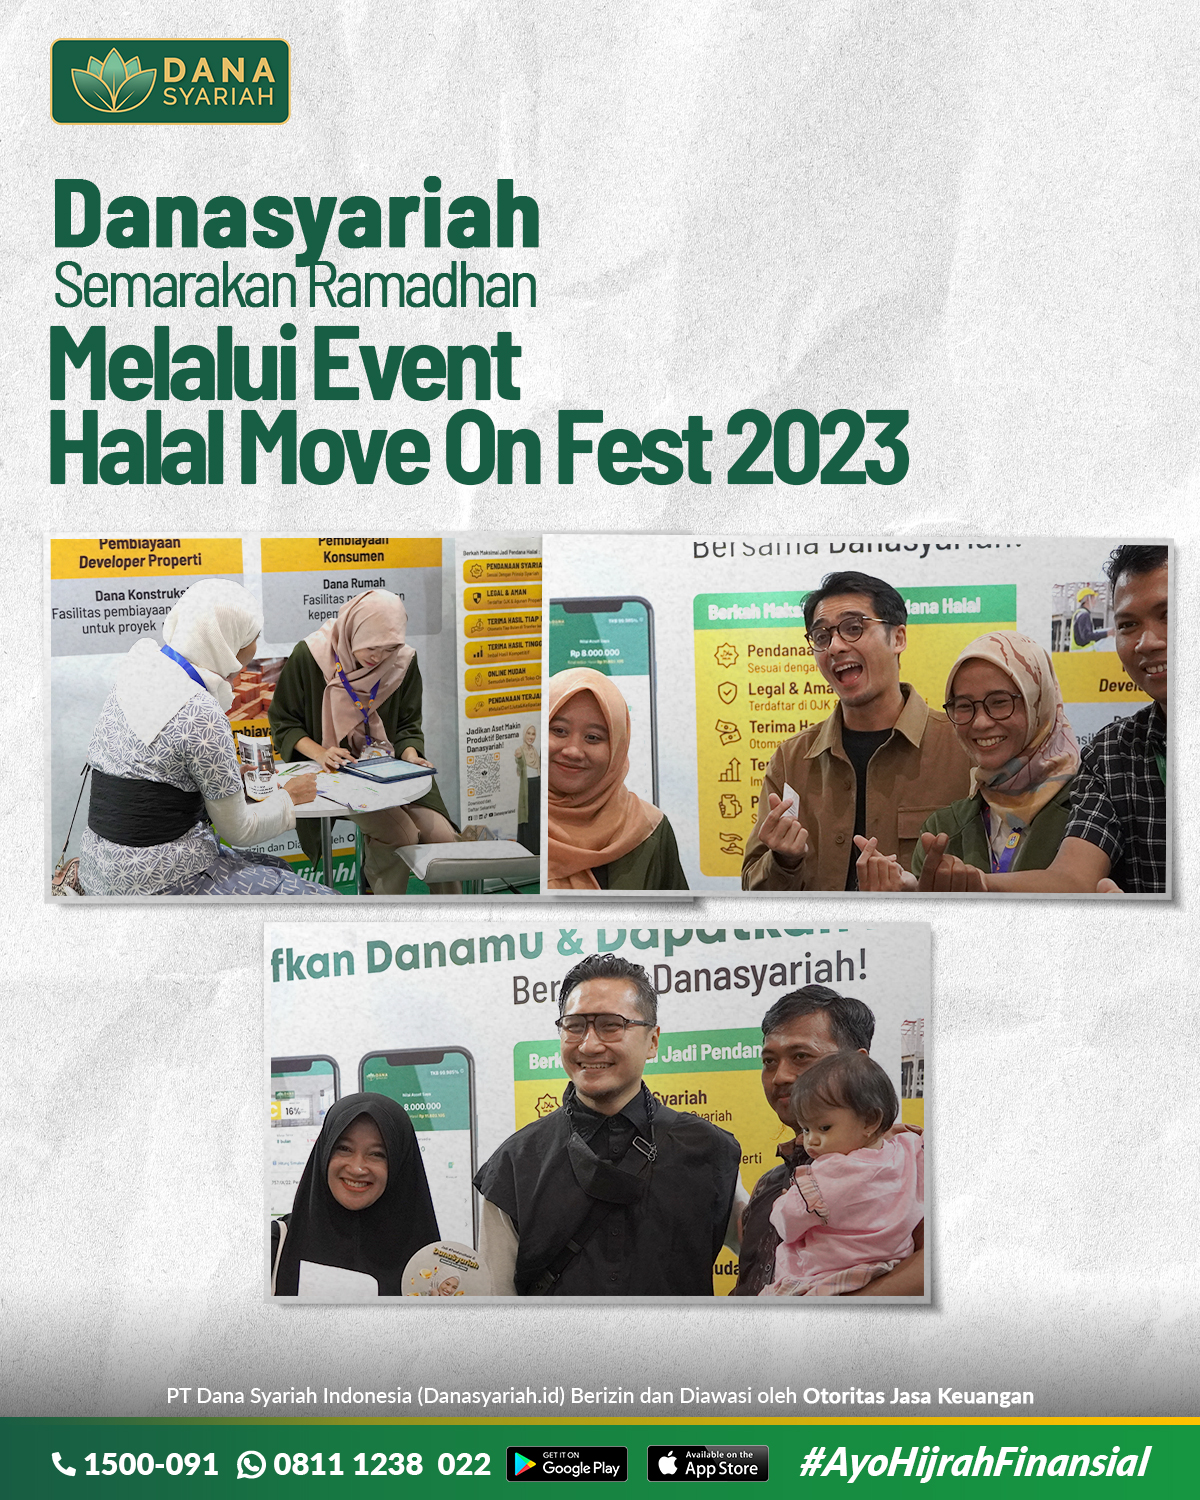 Dana Syariah Danasyariah Semarakan Ramadhan Melalui Event Halal Move On Fest 2023